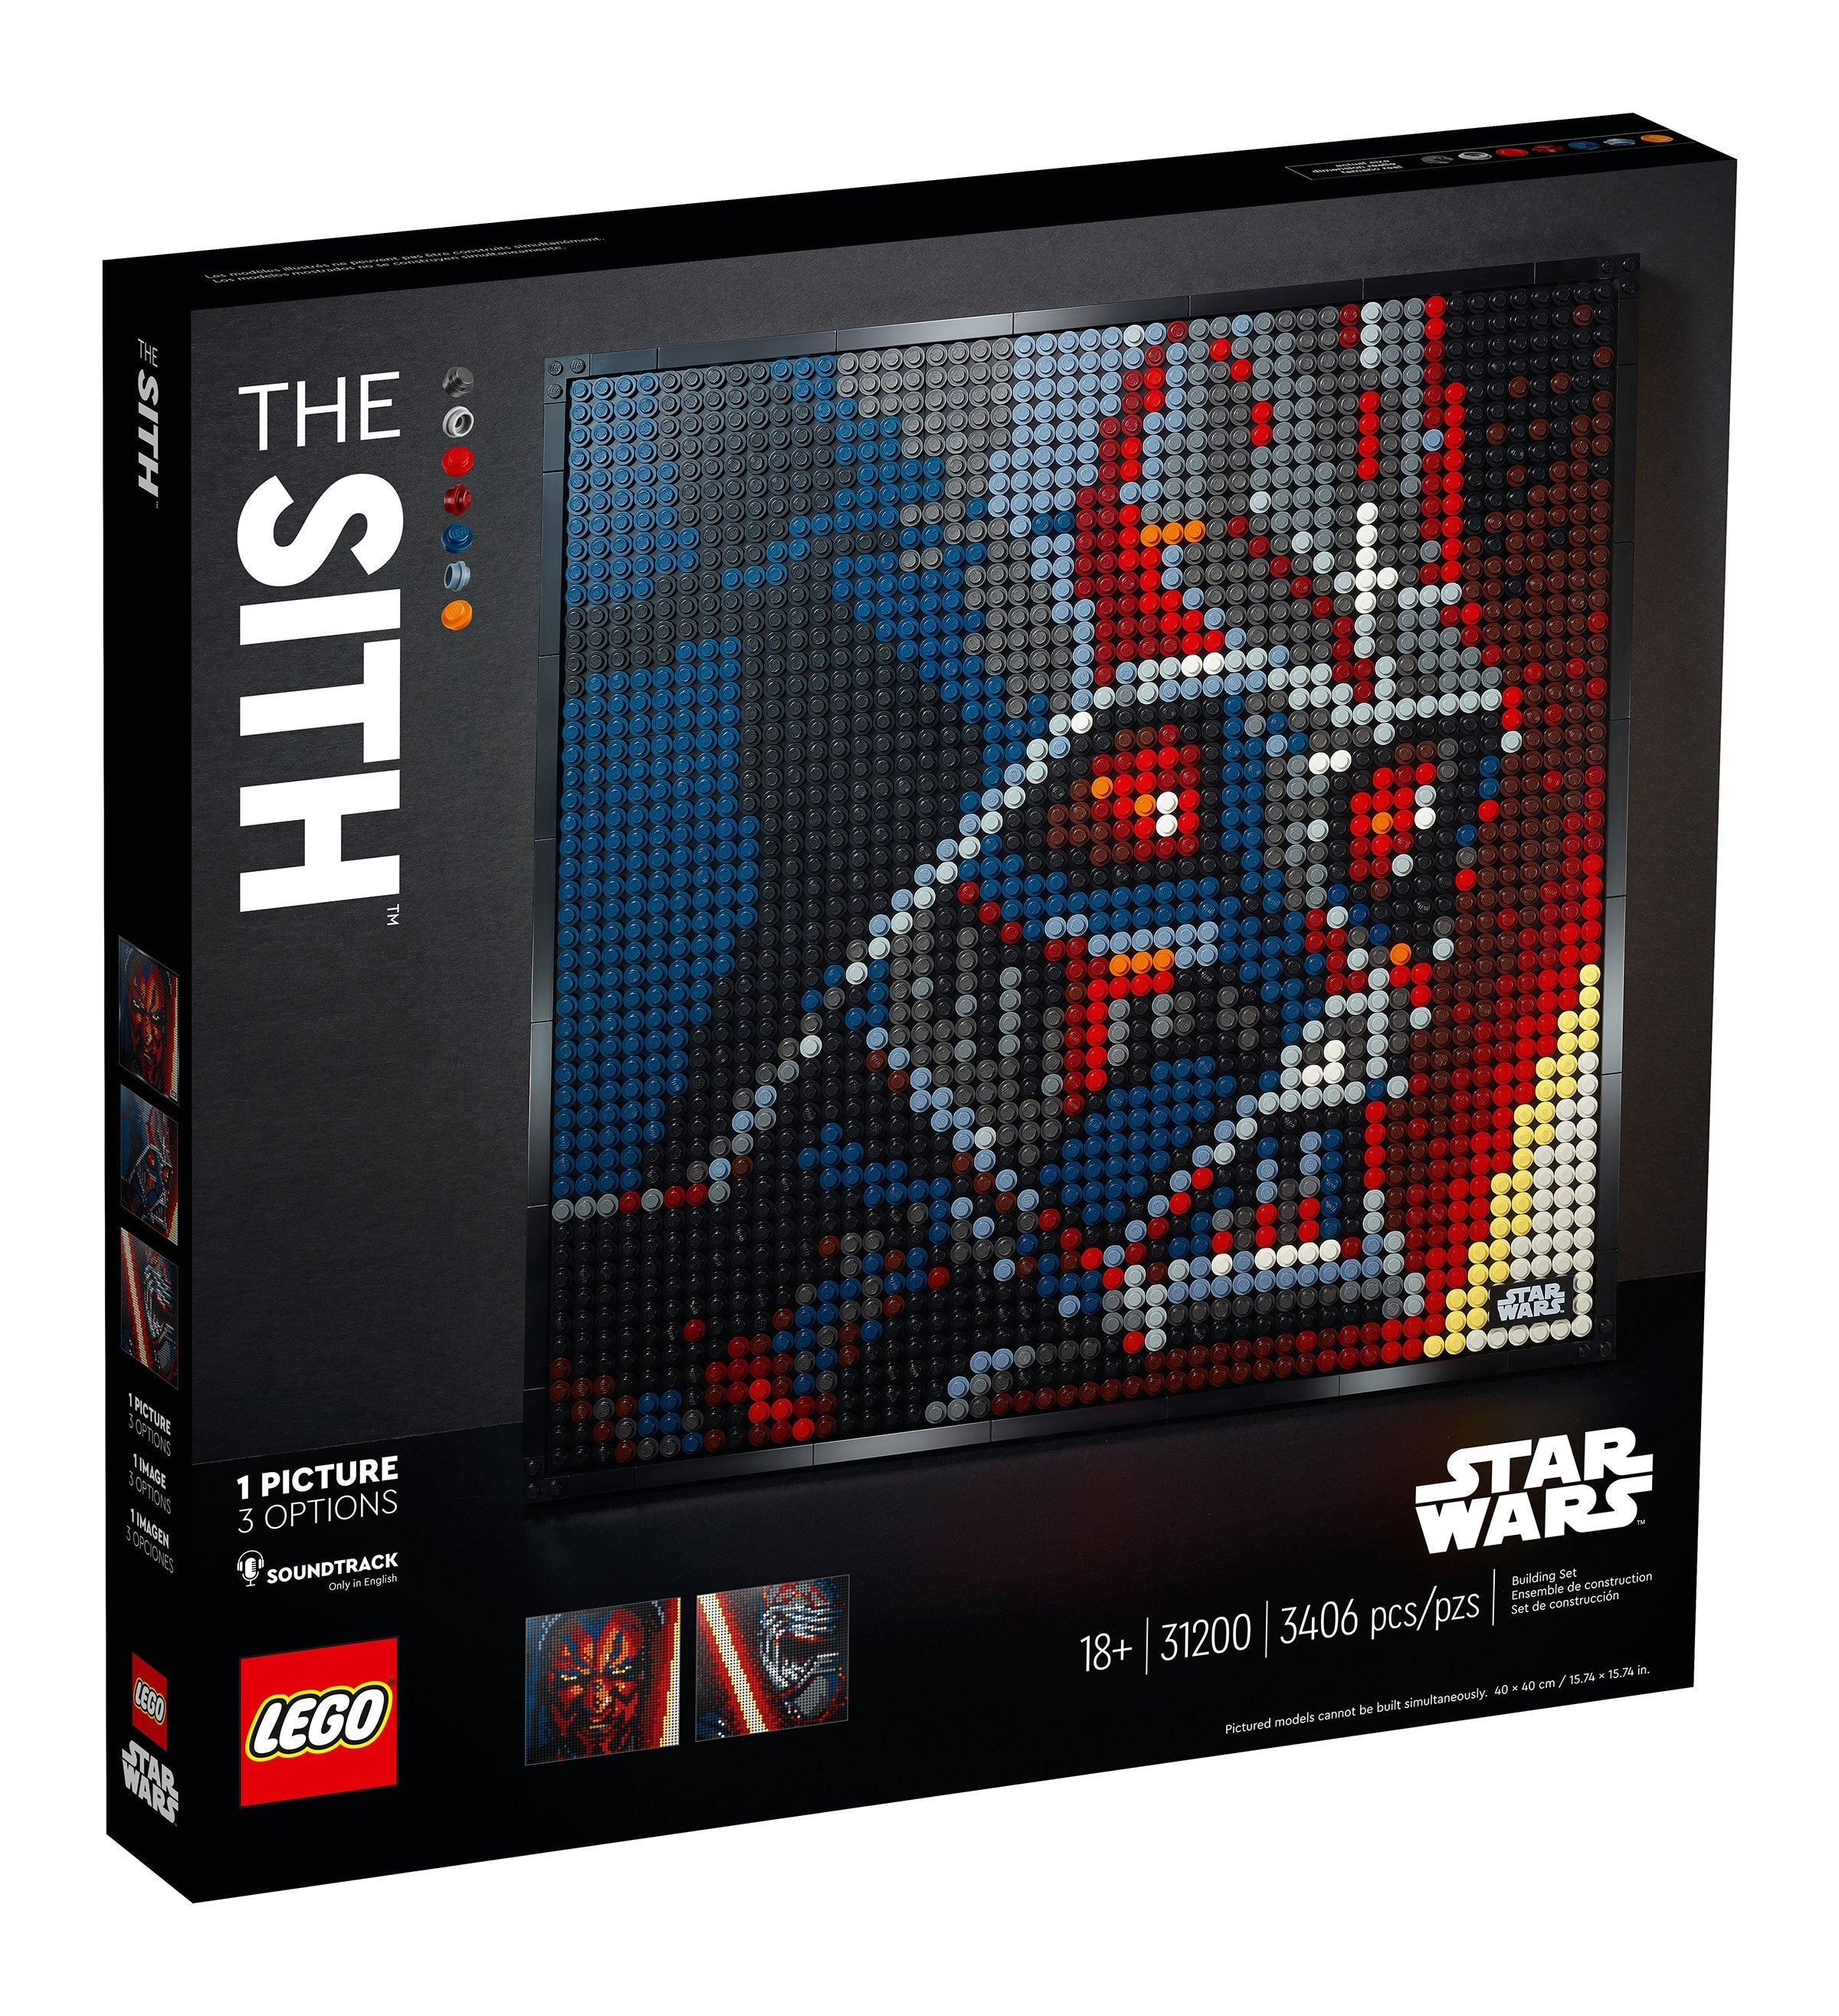 LEGO Art Star Wars, Die Sith (31200) - im GOLDSTIEN.SHOP verfügbar mit Gratisversand ab Schweizer Lager! (5702016677713)